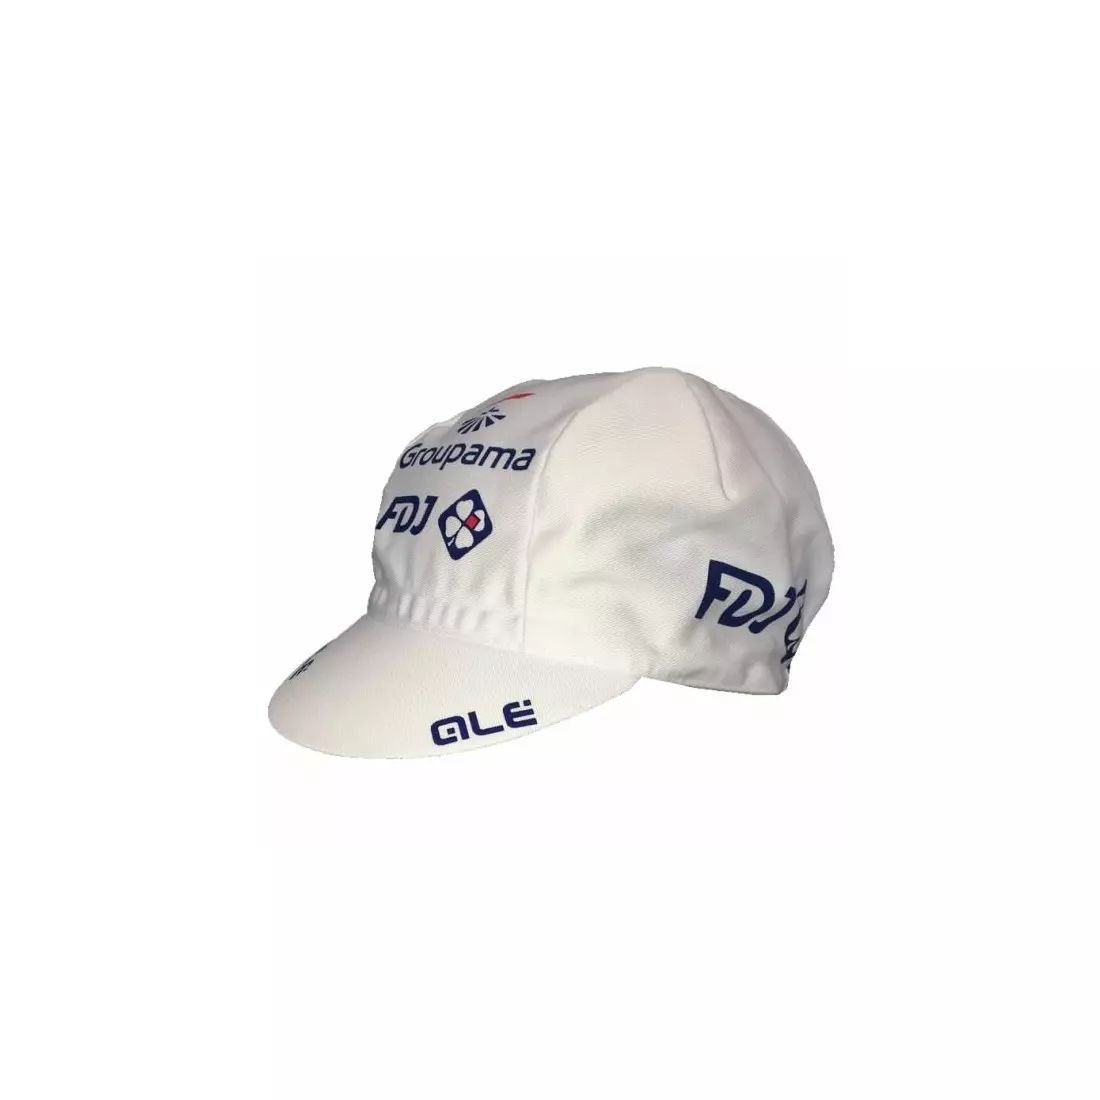 APIS PROFI FDJ 2018/2019 cycling cap with visor